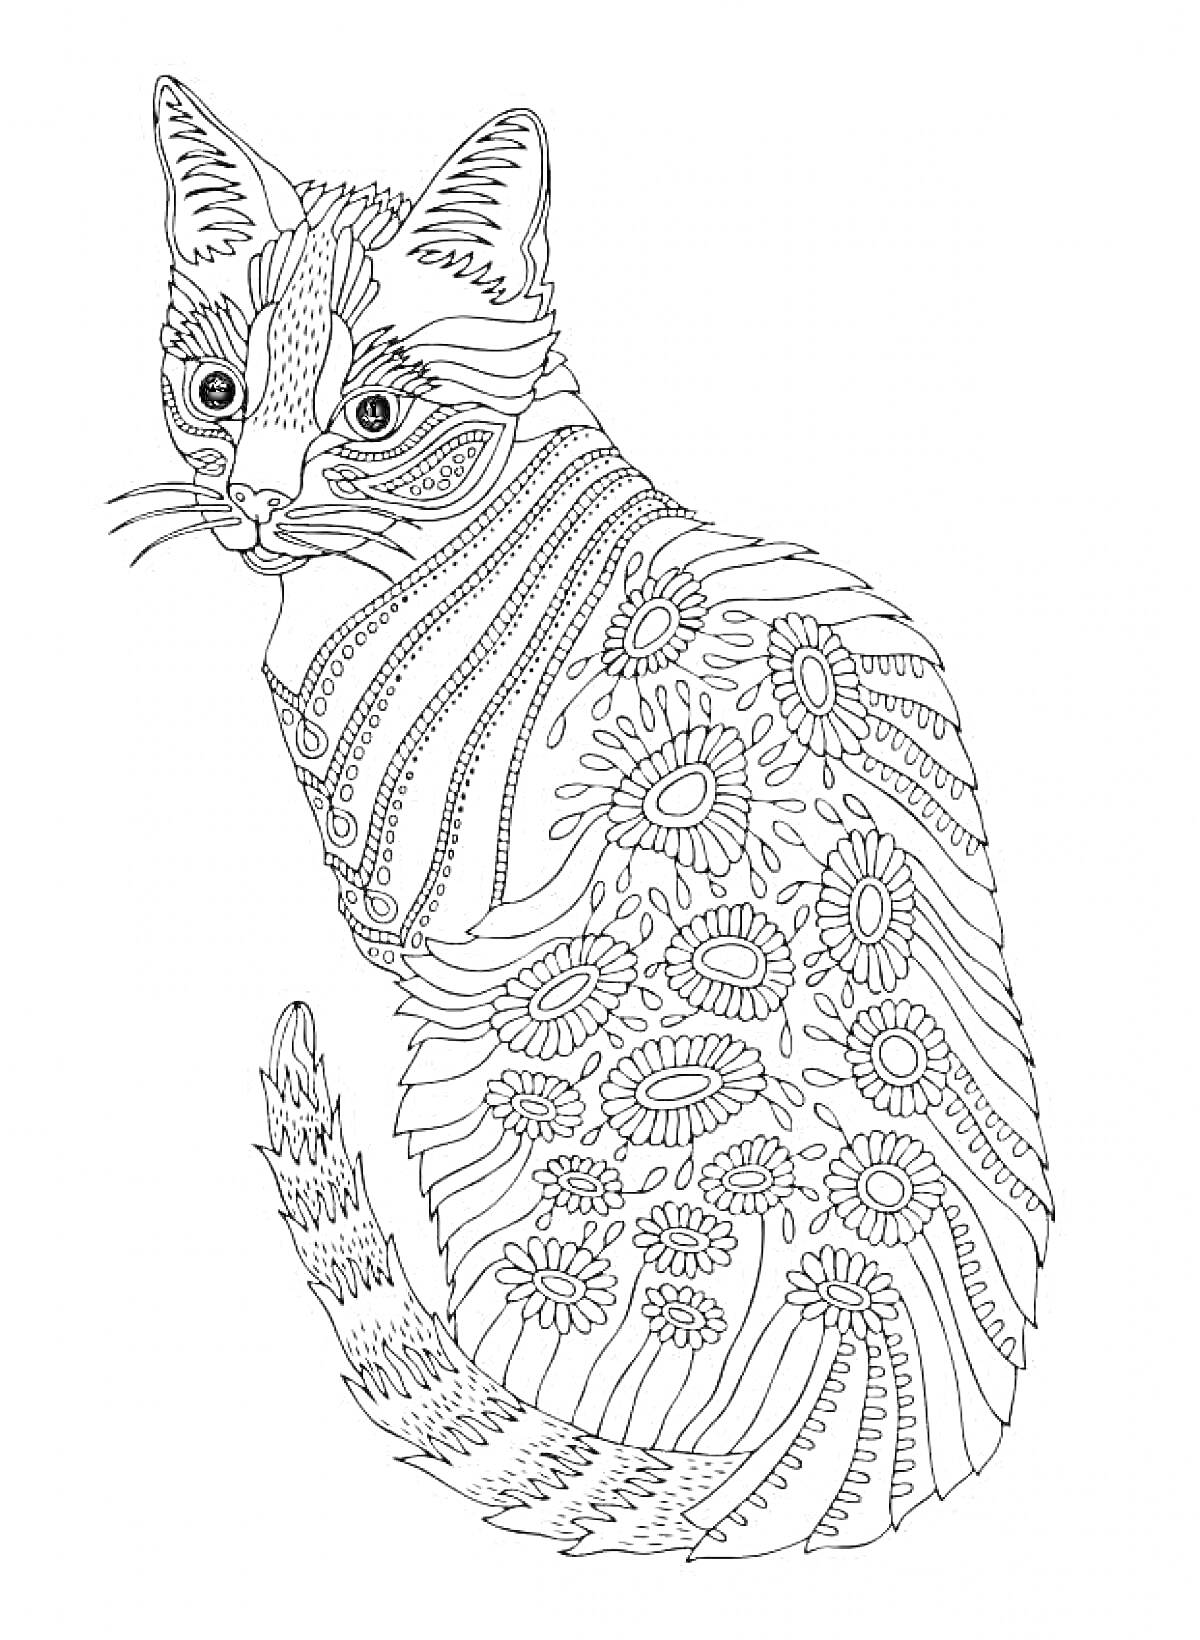 Раскраска Кошка с узорчатым телом, включающим цветочные и линиями подобные элементы